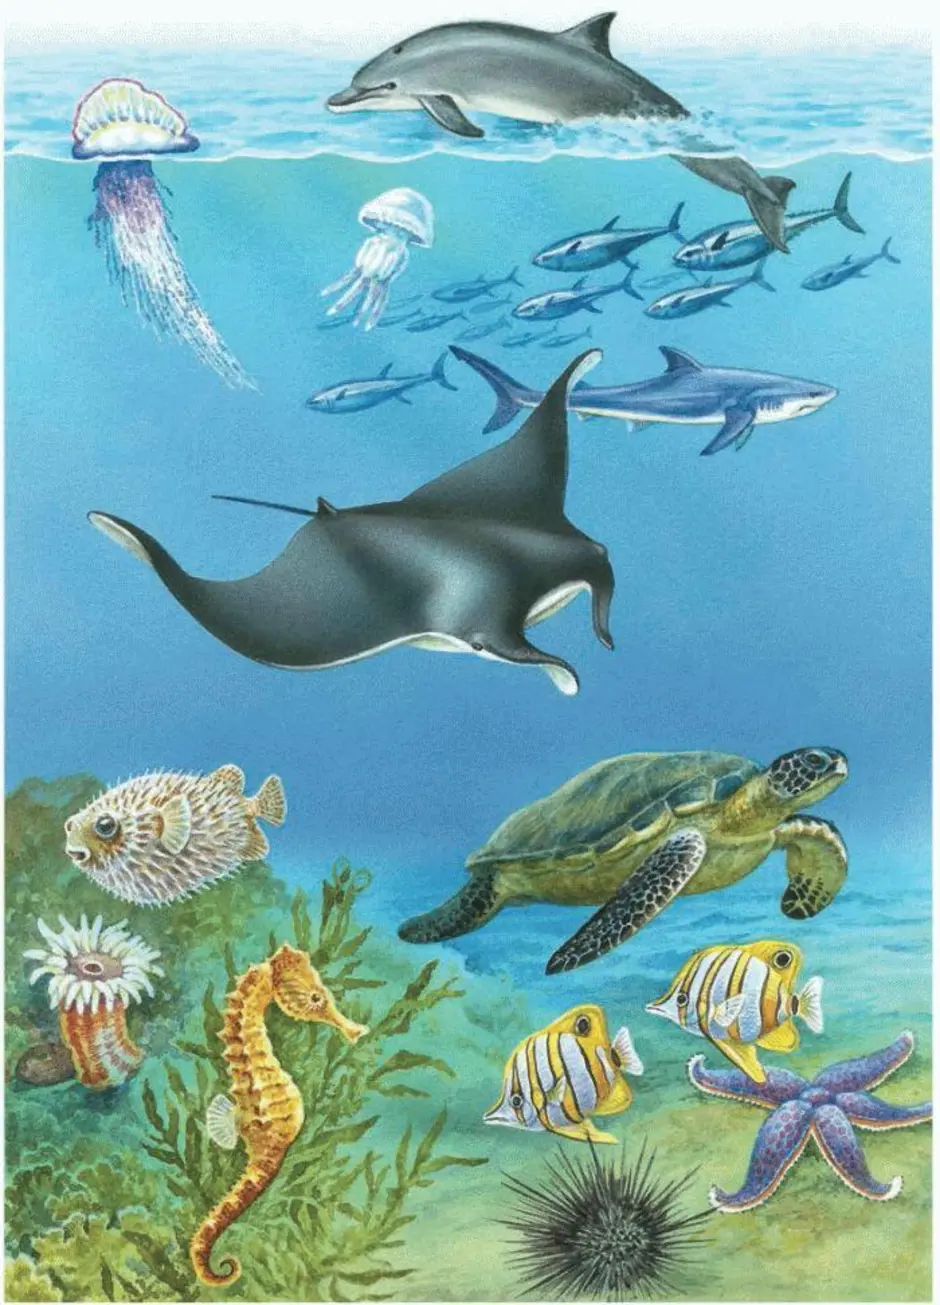 Живут в основном в водной среде. Обитателив однйос Реды. Обитатели морей и океанов. Обитатели водноной среды. Водная среда обитания.